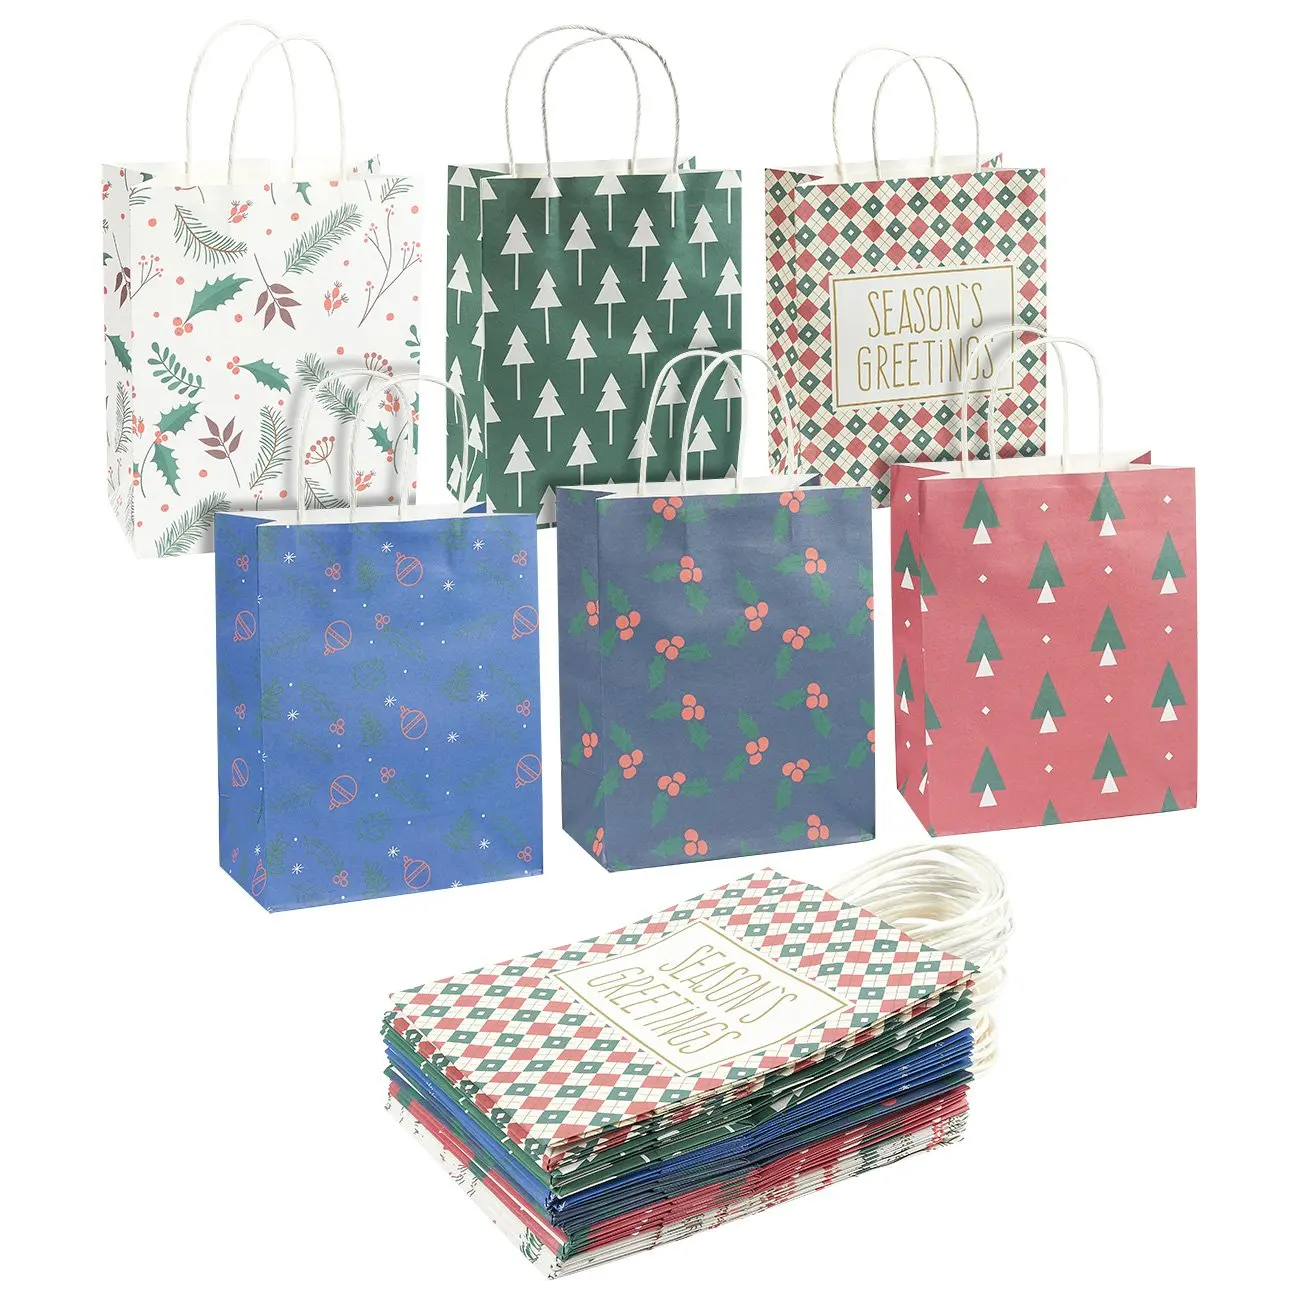 Buy 88 Assorted Designs of Flat Paper Bags in OPP Packaging (100 packs